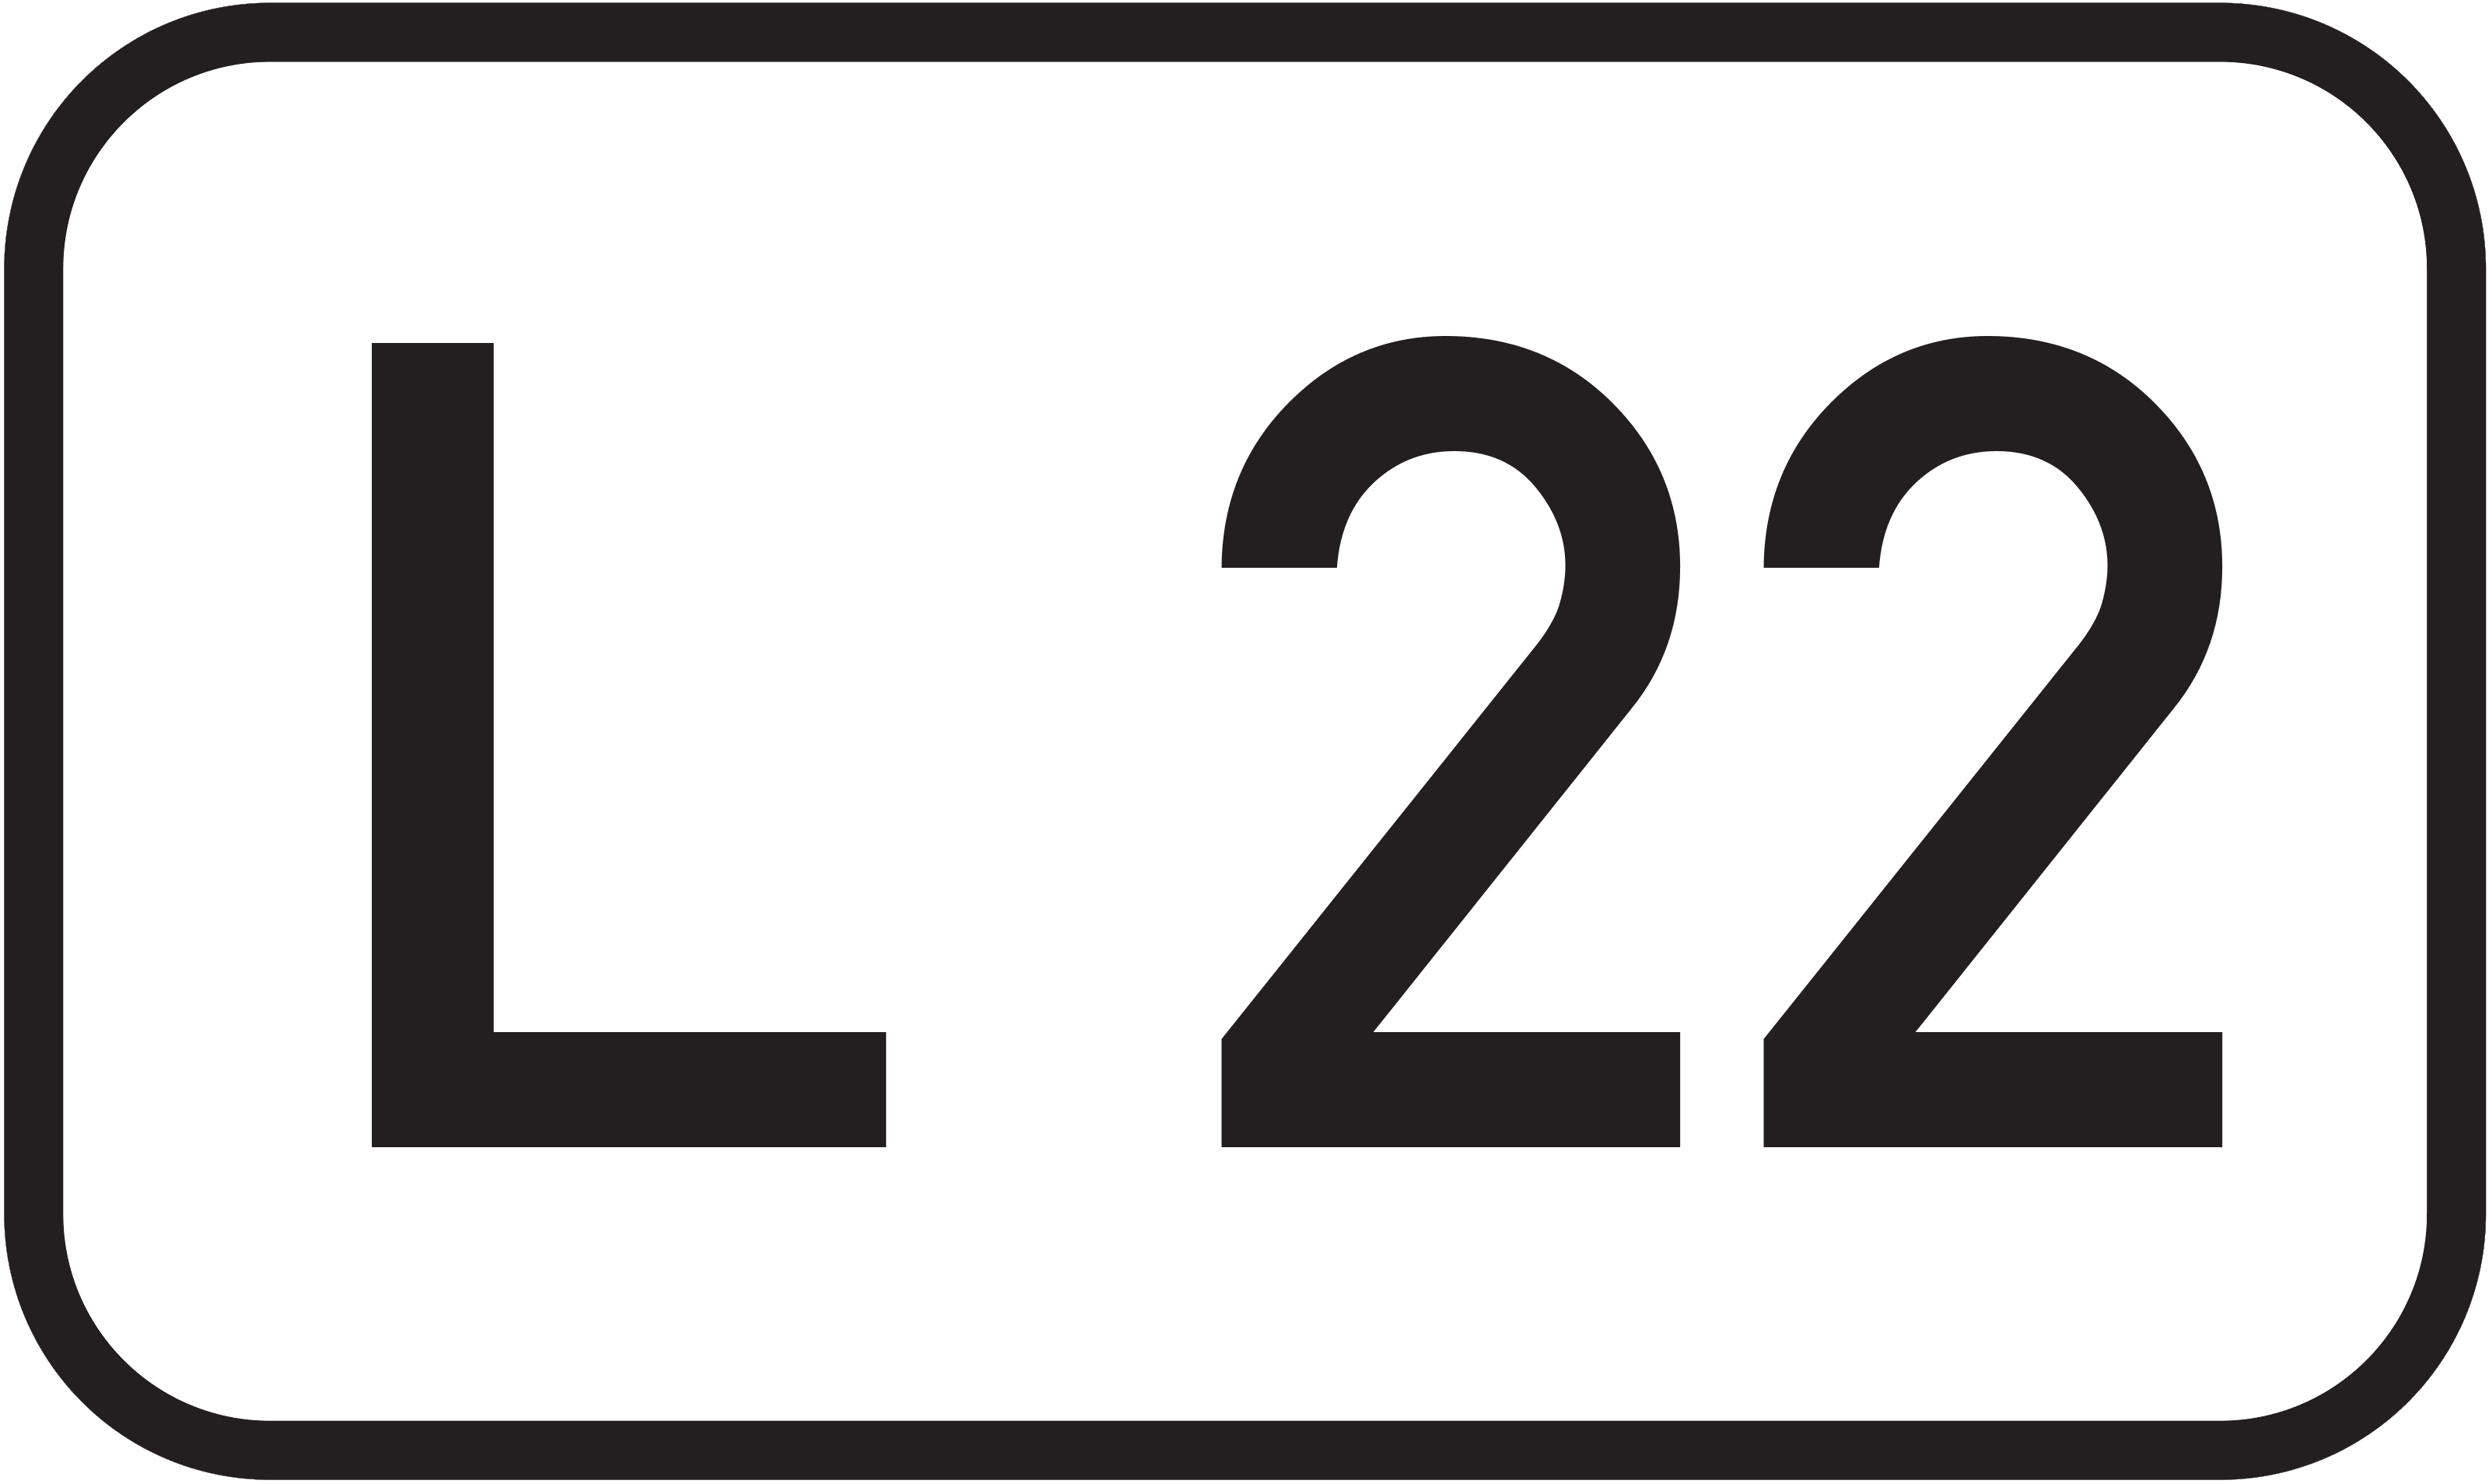 Landesstraße L 22